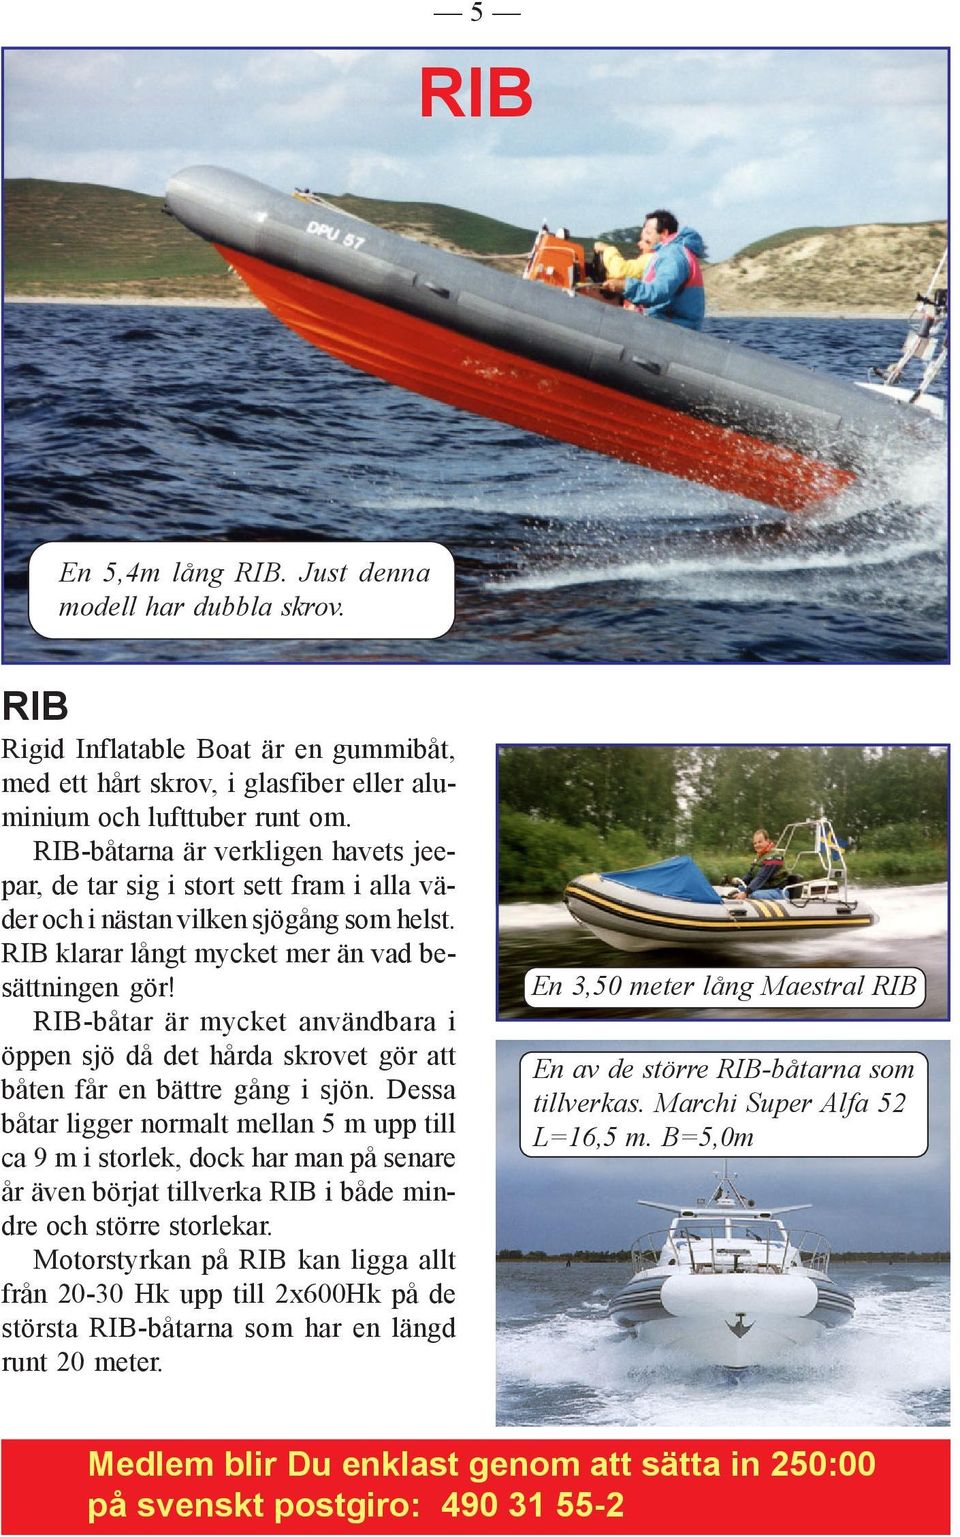 RIB-båtar är mycket användbara i öppen sjö då det hårda skrovet gör att båten får en bättre gång i sjön.